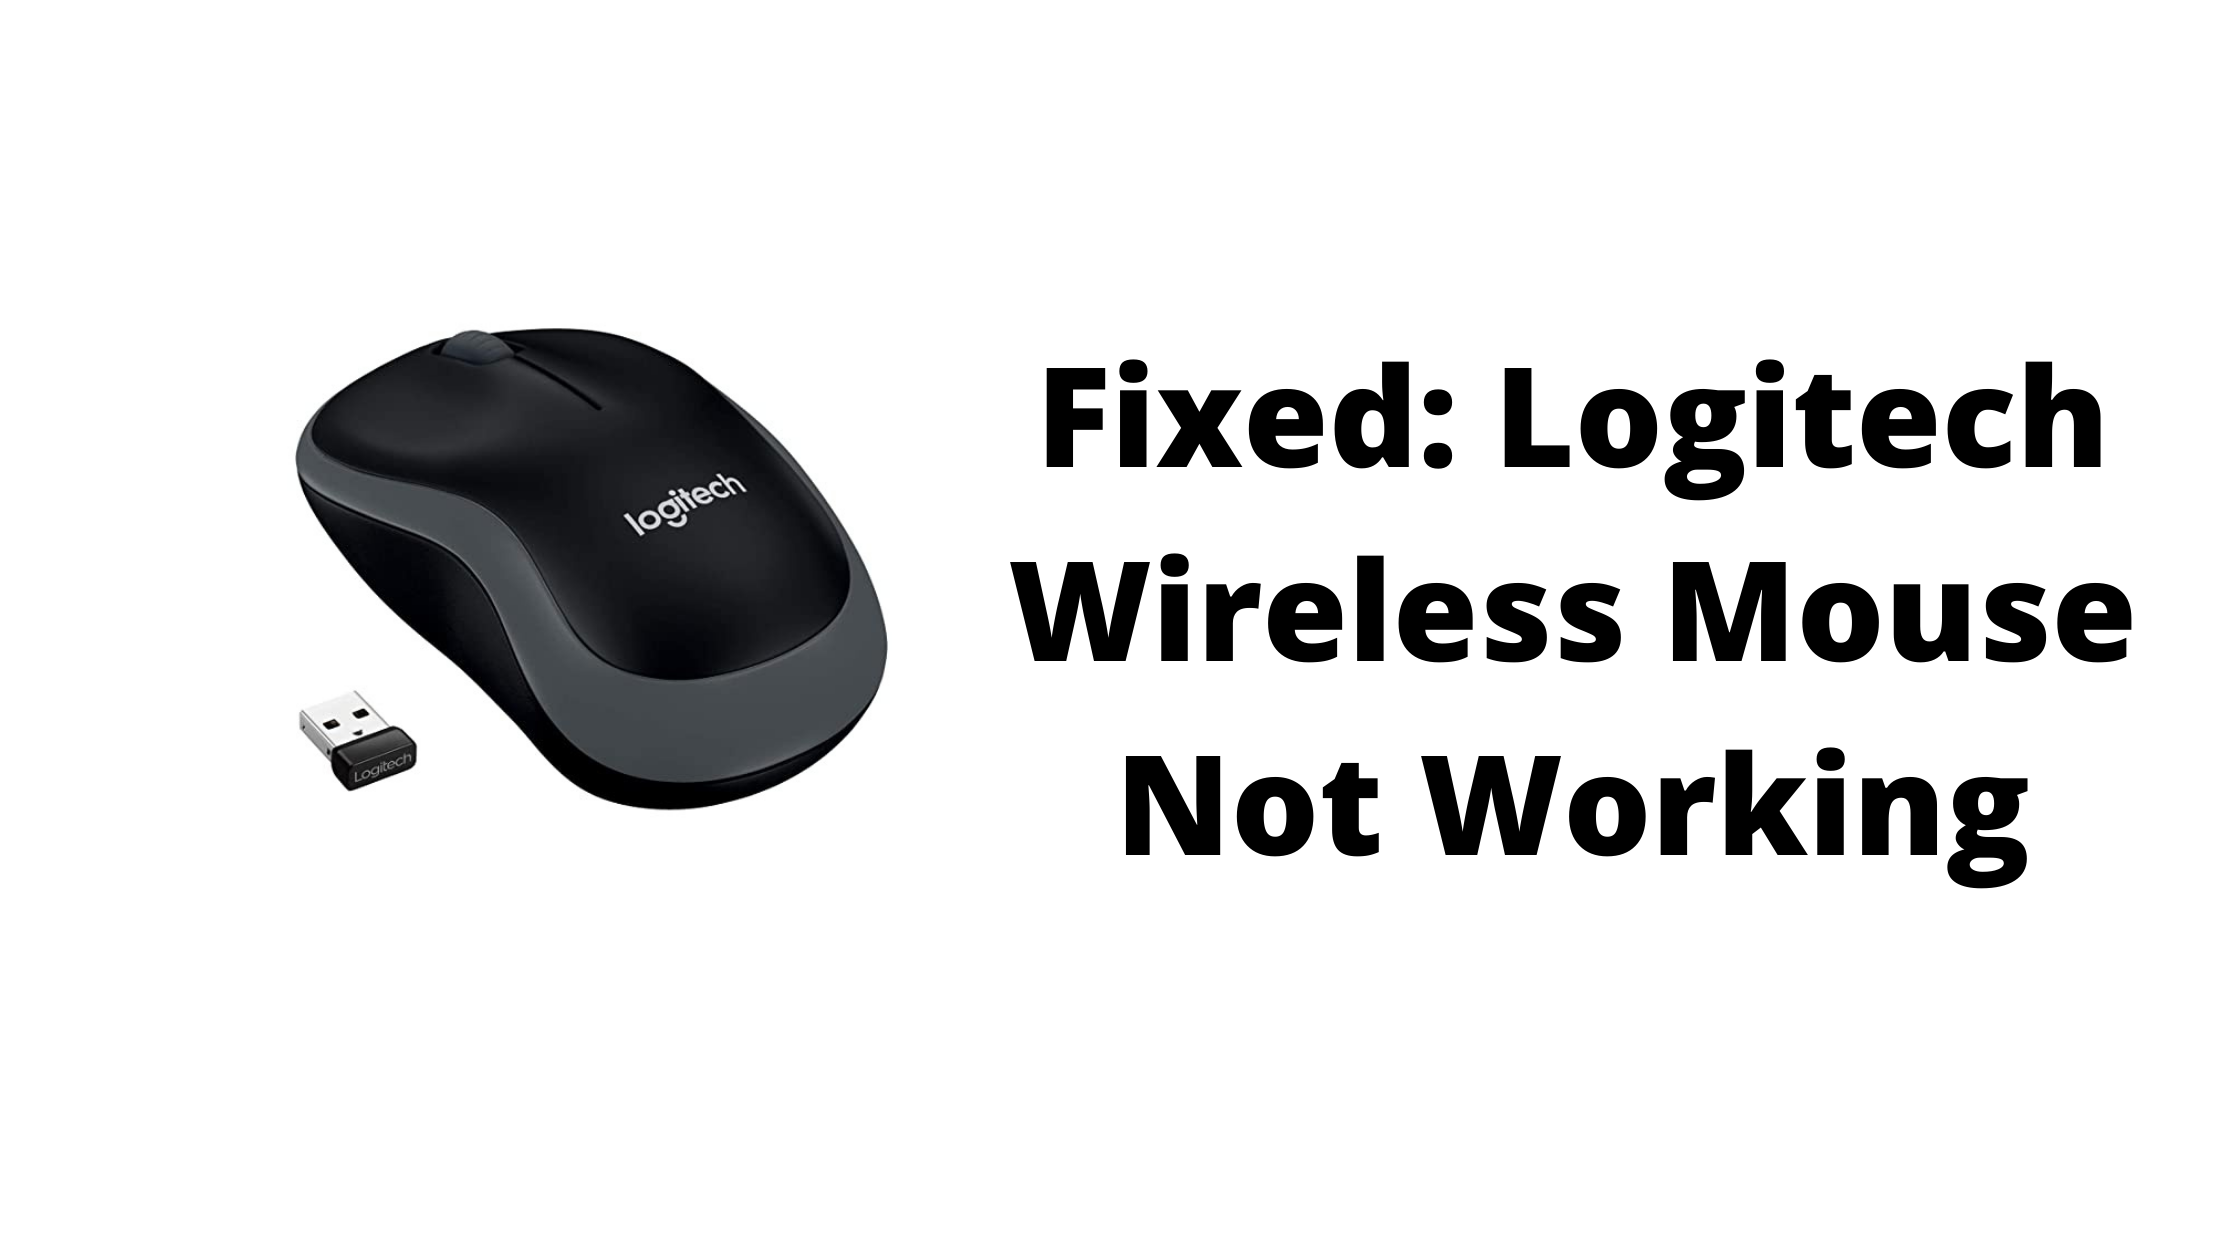 Mijlpaal Onderhandelen Verstelbaar Logitech Wireless Mouse Not working? Here's how to reset it - Fixable stuff